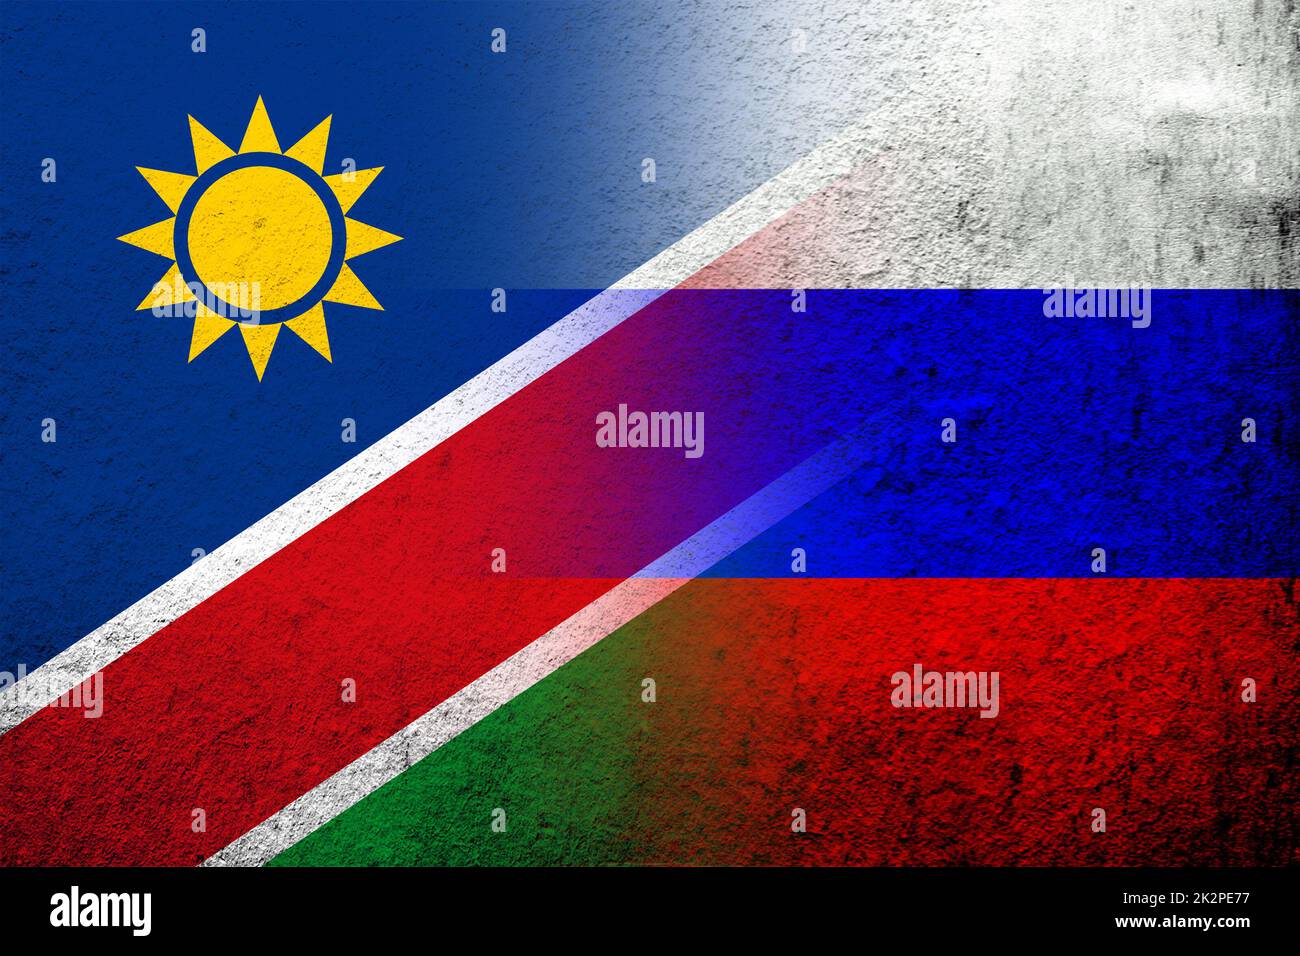 Nationalflagge der Russischen Föderation mit der Republik Namibia Nationalflagge. Grungen Hintergrund Stockfoto